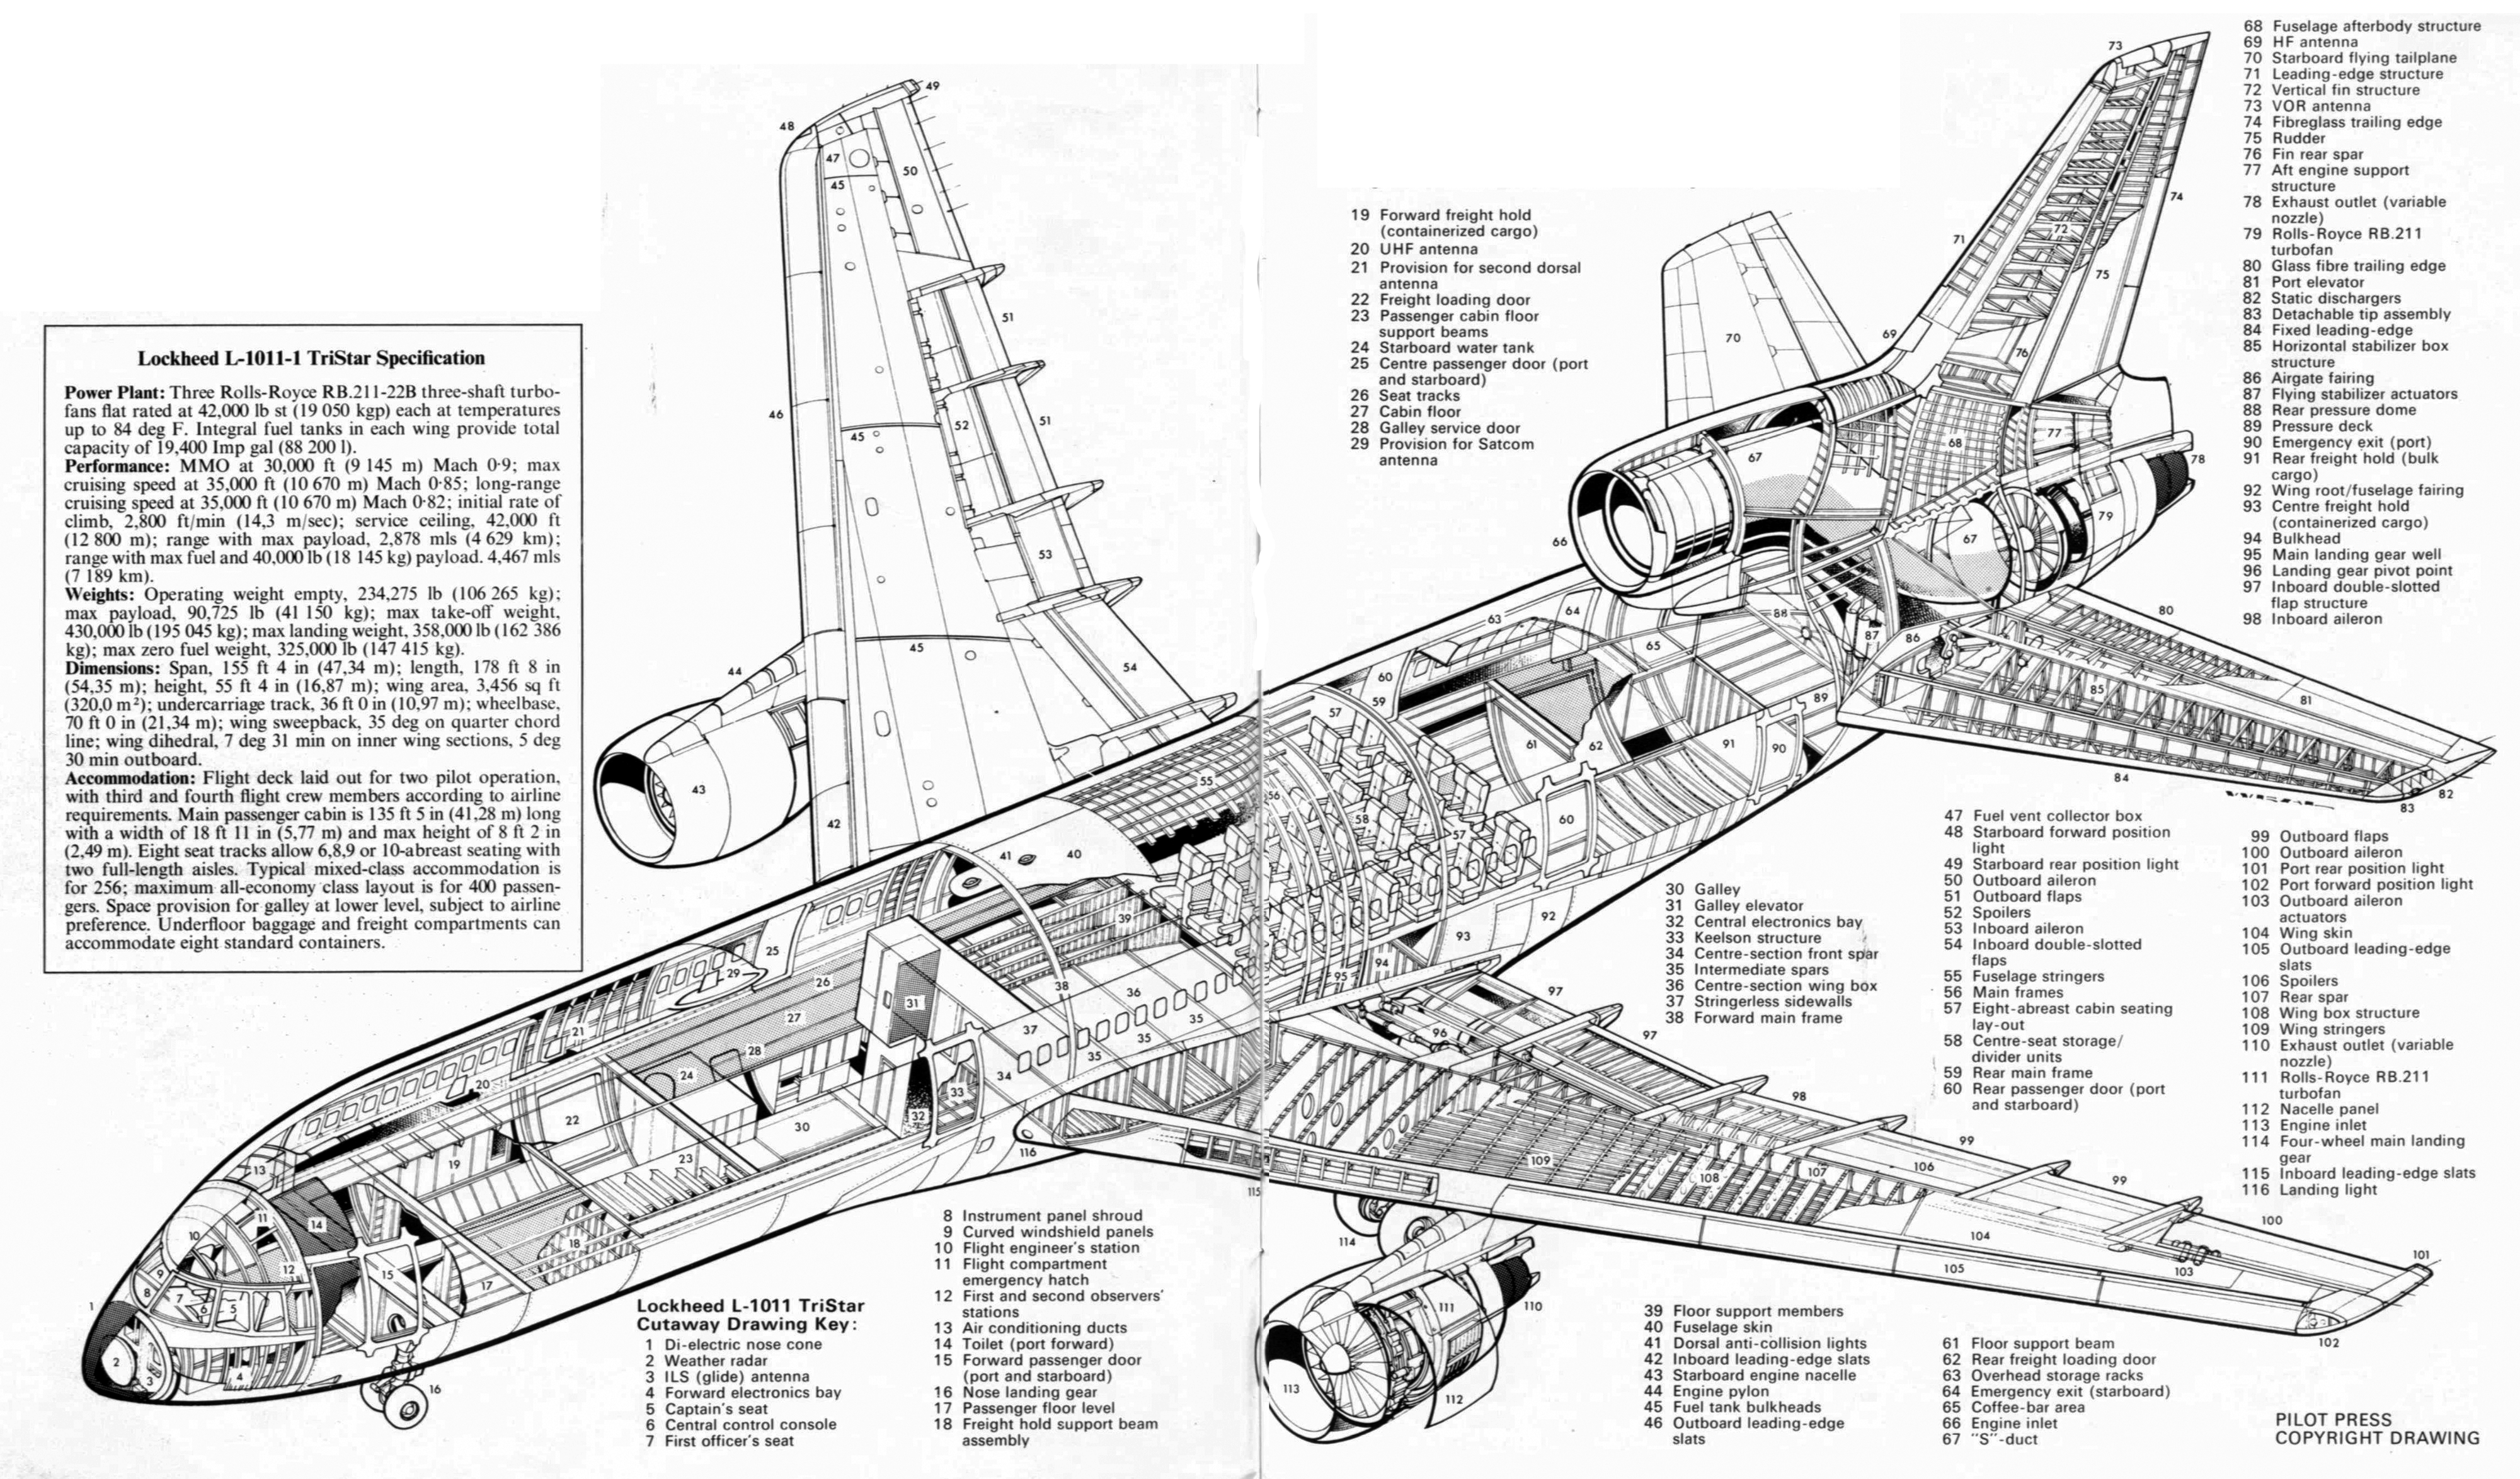 Boeing 727: характеристики, схема салона, лучшие места